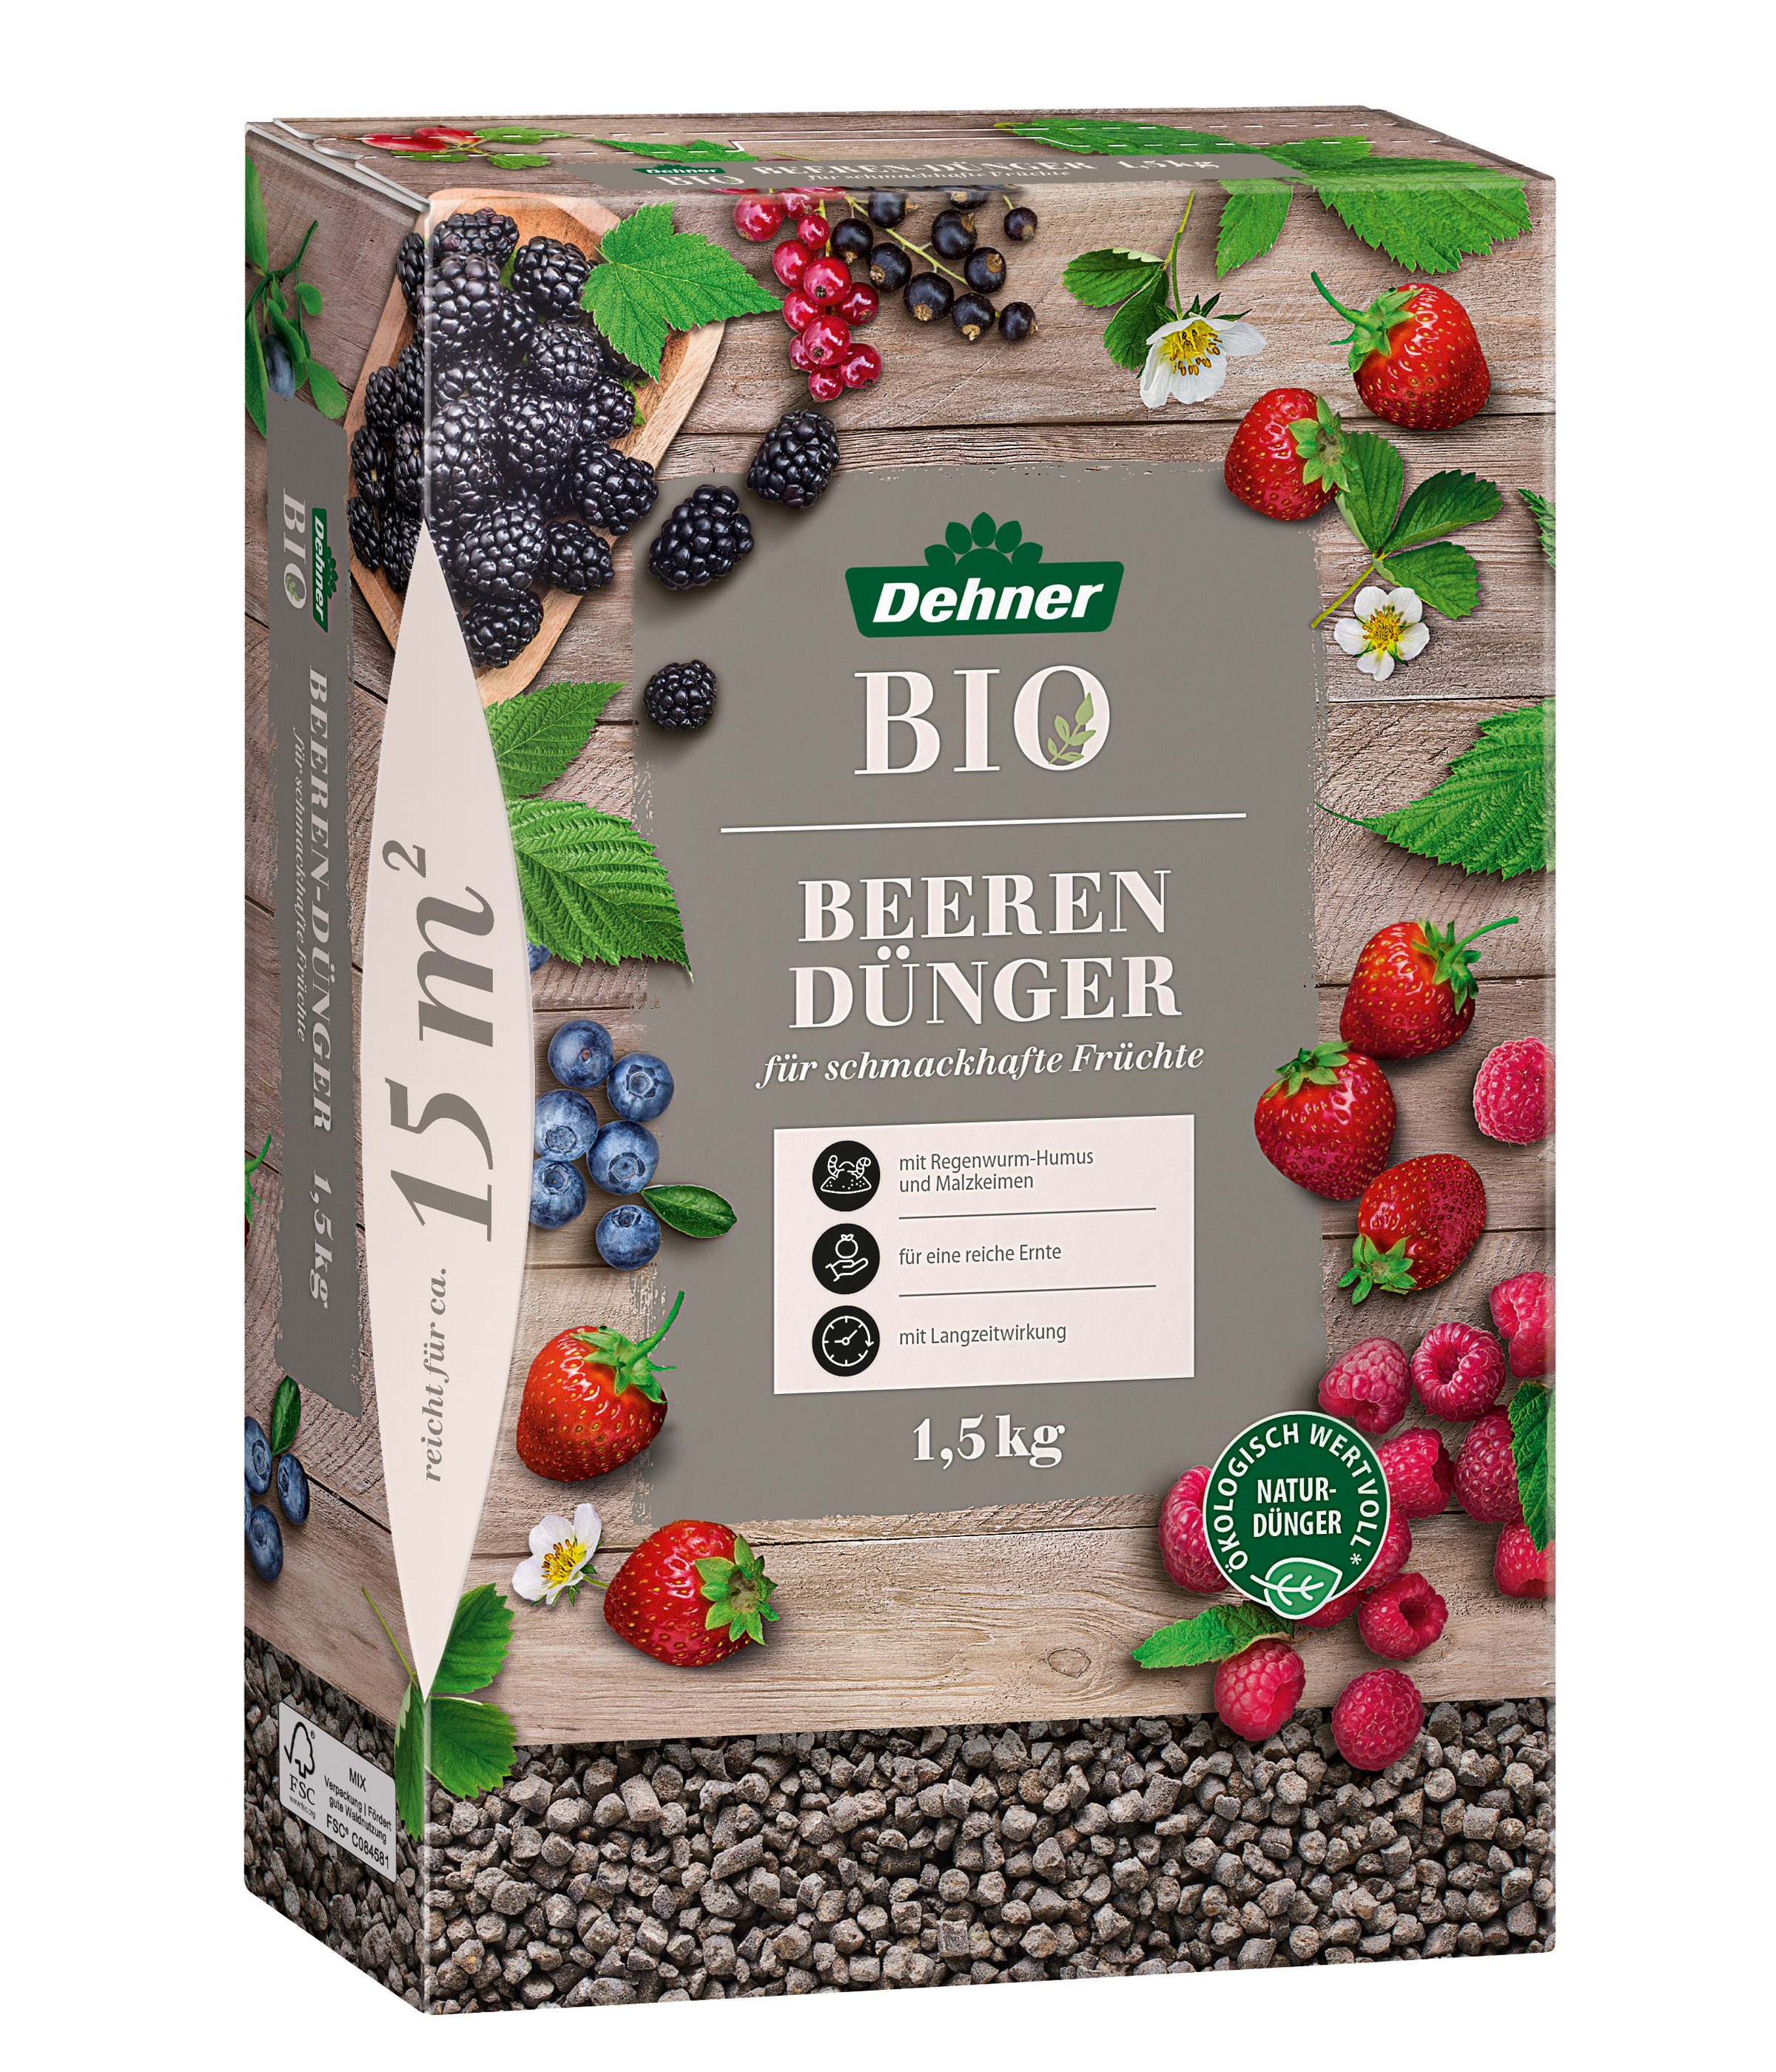 Dehner Gartendünger Bio Beerendünger, hochwertiger NPK-Dünger, 1.5 kg, für ca. 15 qm, natürliche Langzeitwirkung, mit Spurennährstoffen